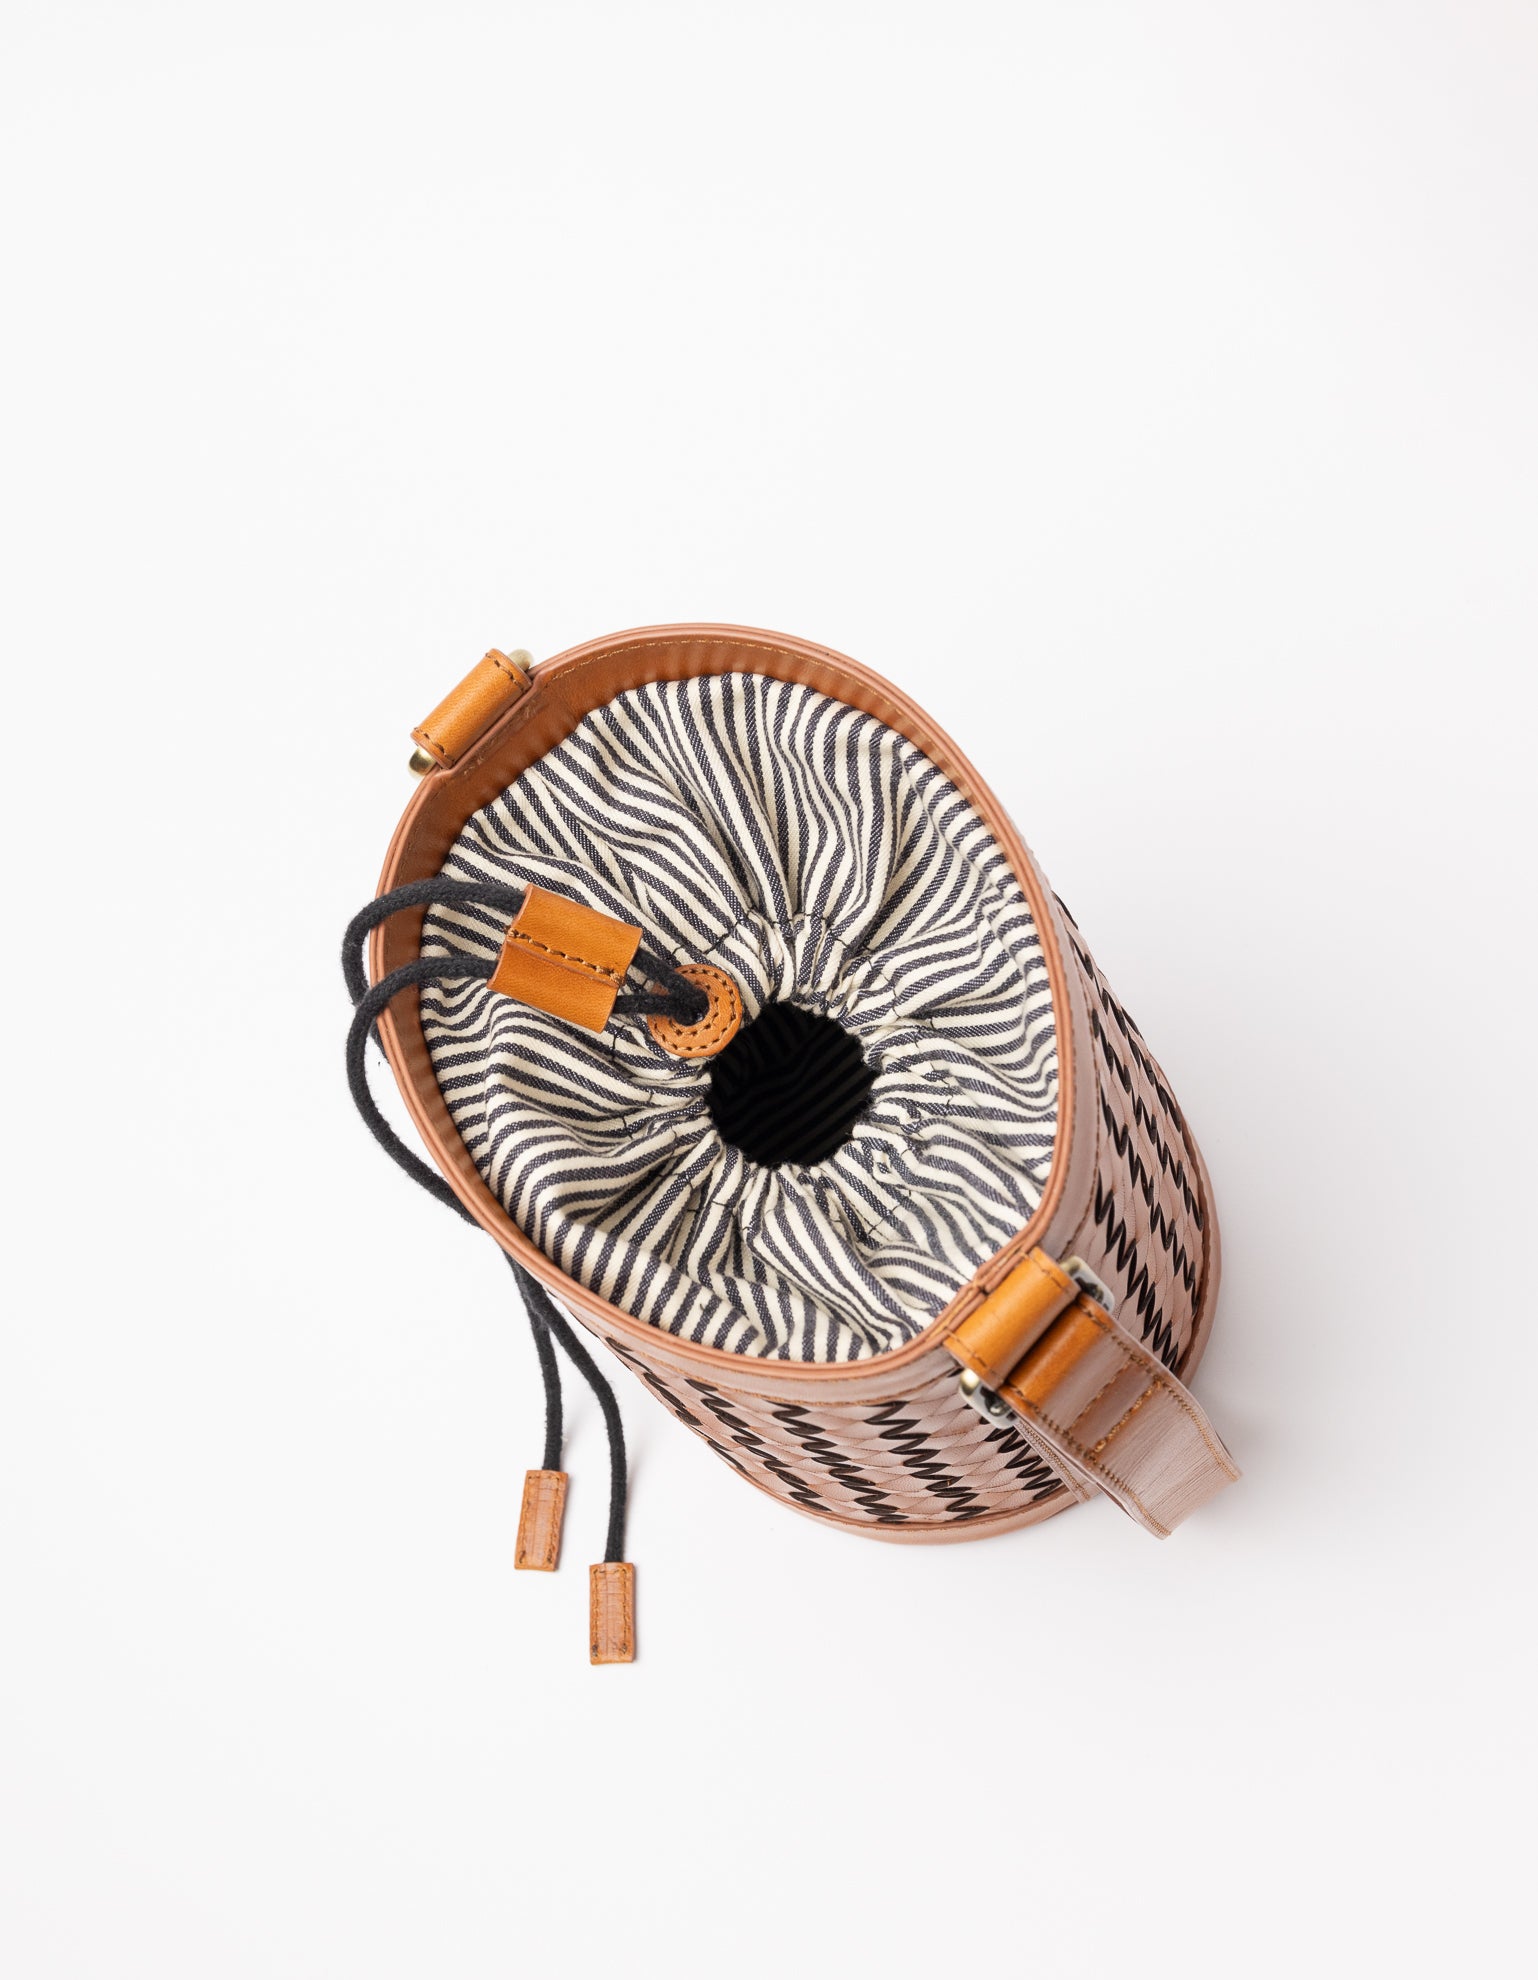 Zola woven leather bucket bag - inside product image